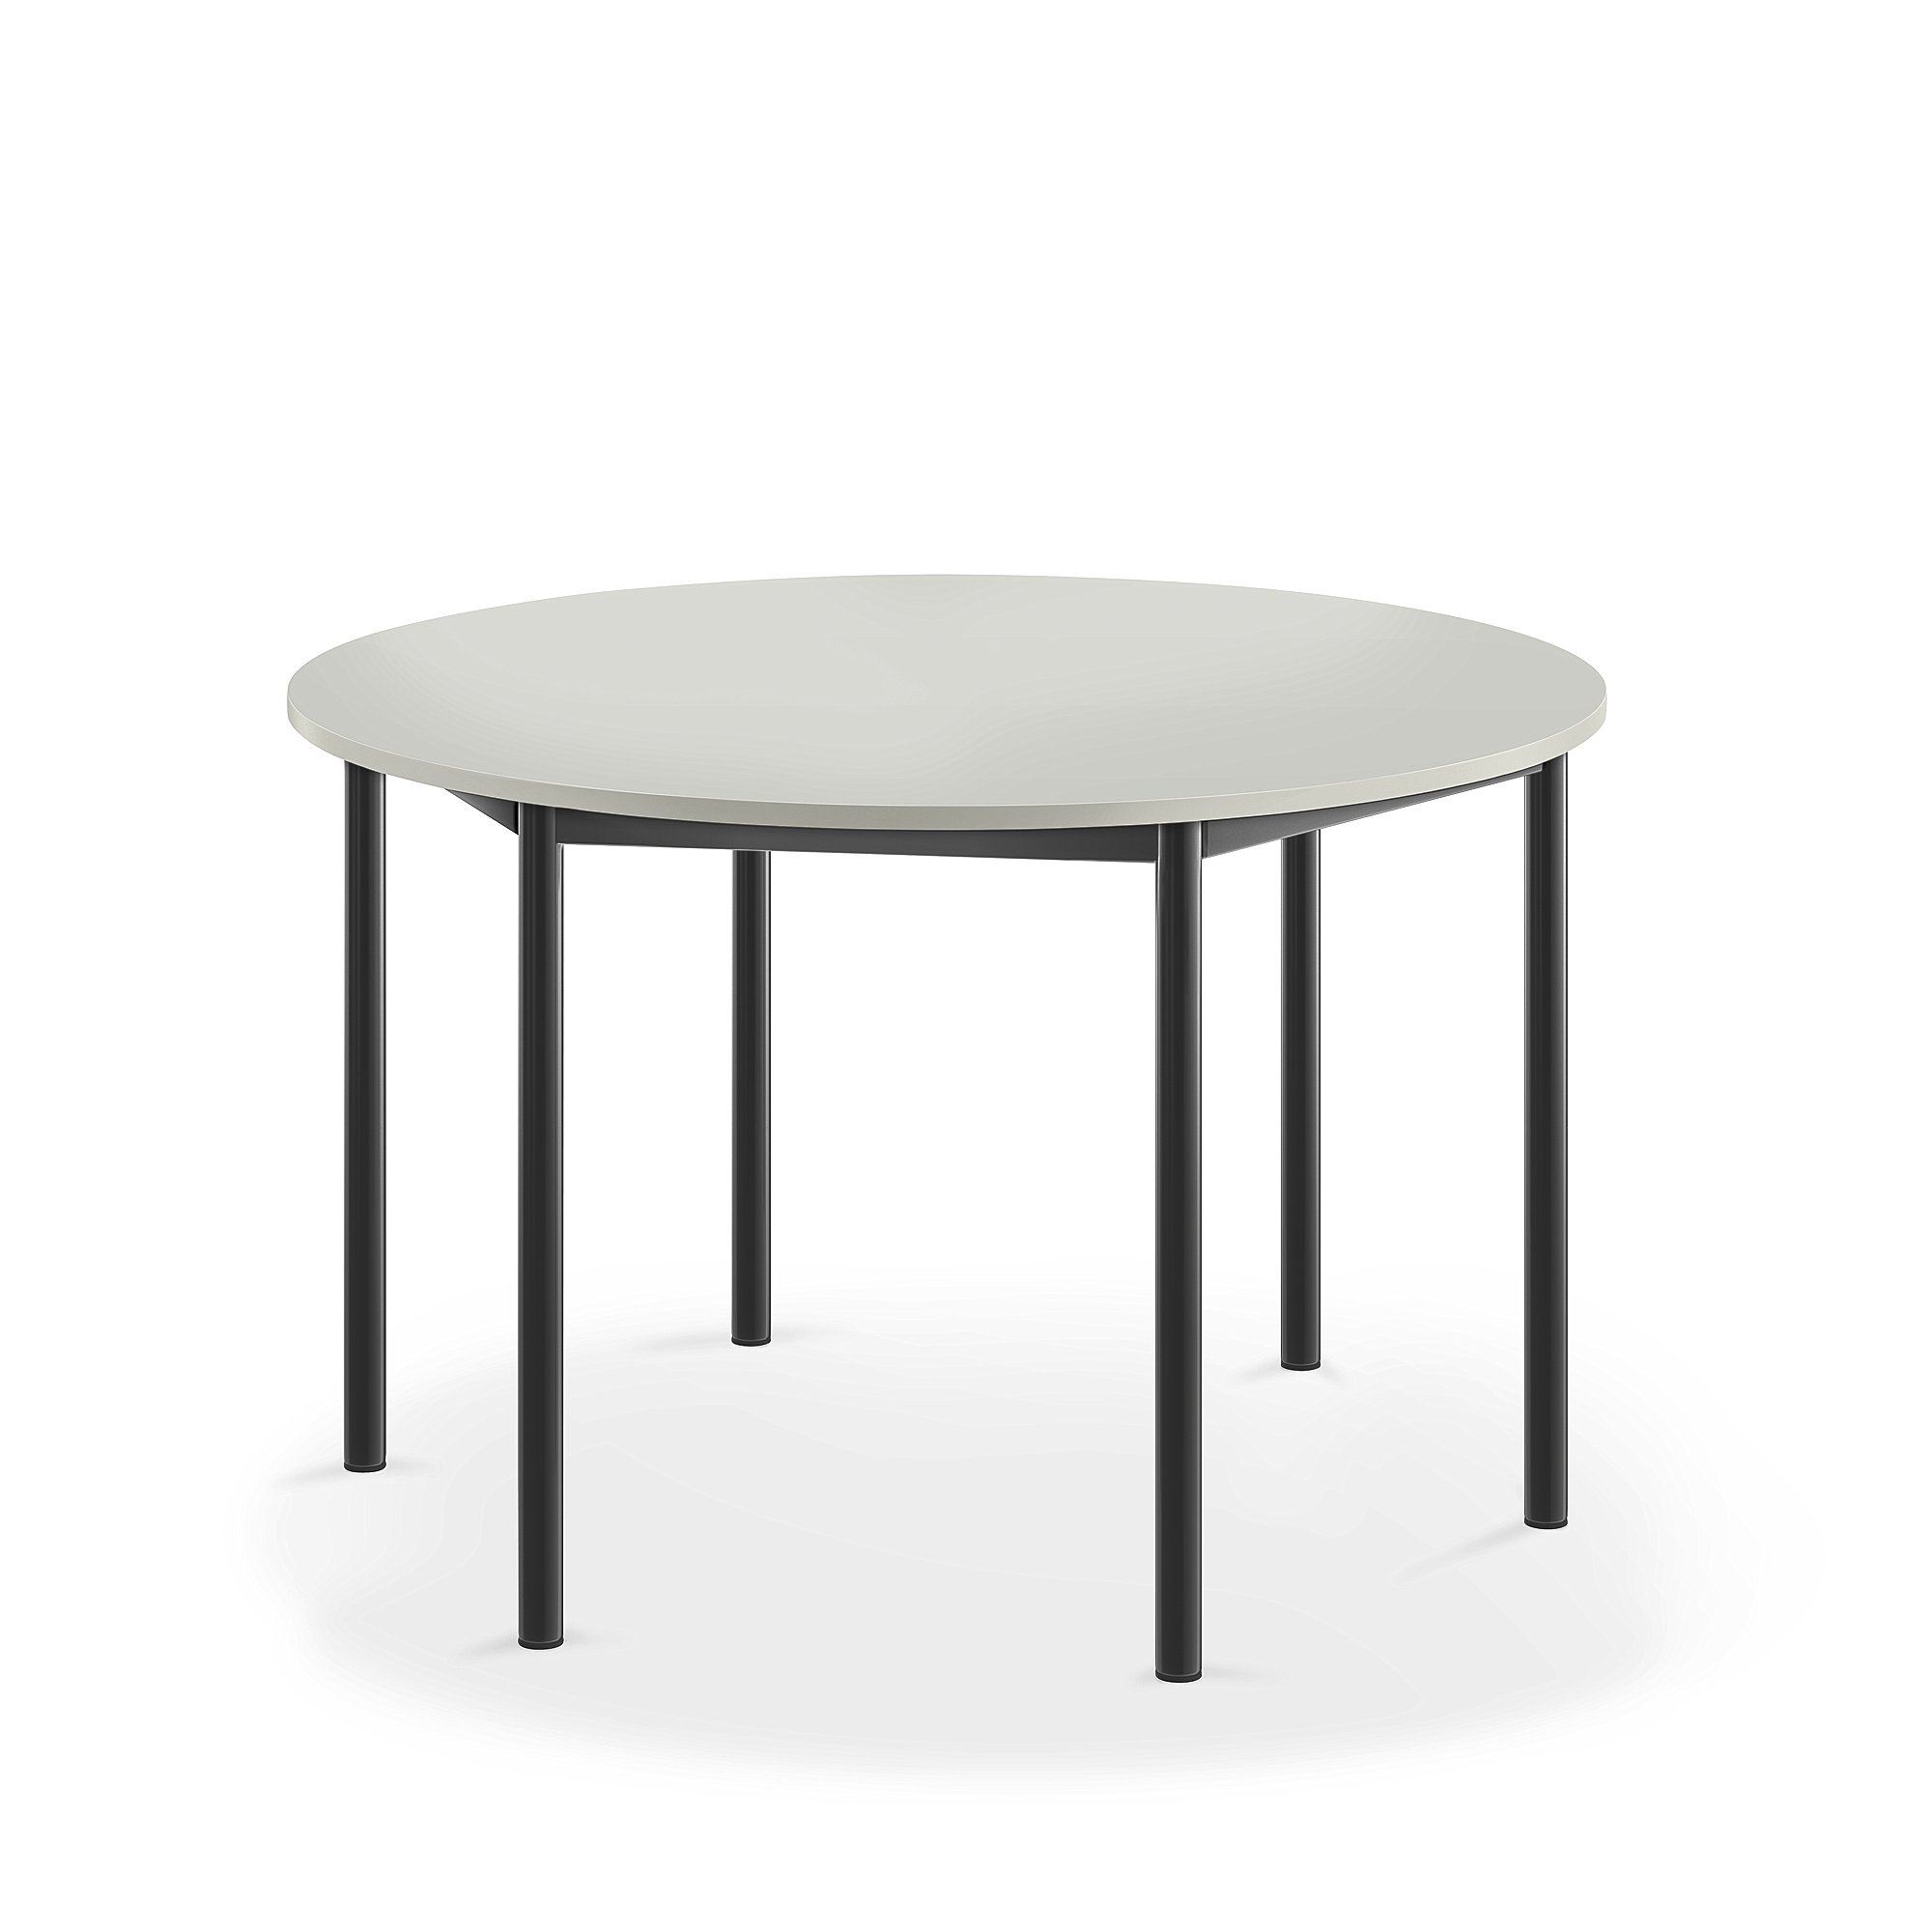 Stůl BORÅS, Ø1200x720 mm, antracitově šedé nohy, HPL deska, šedá